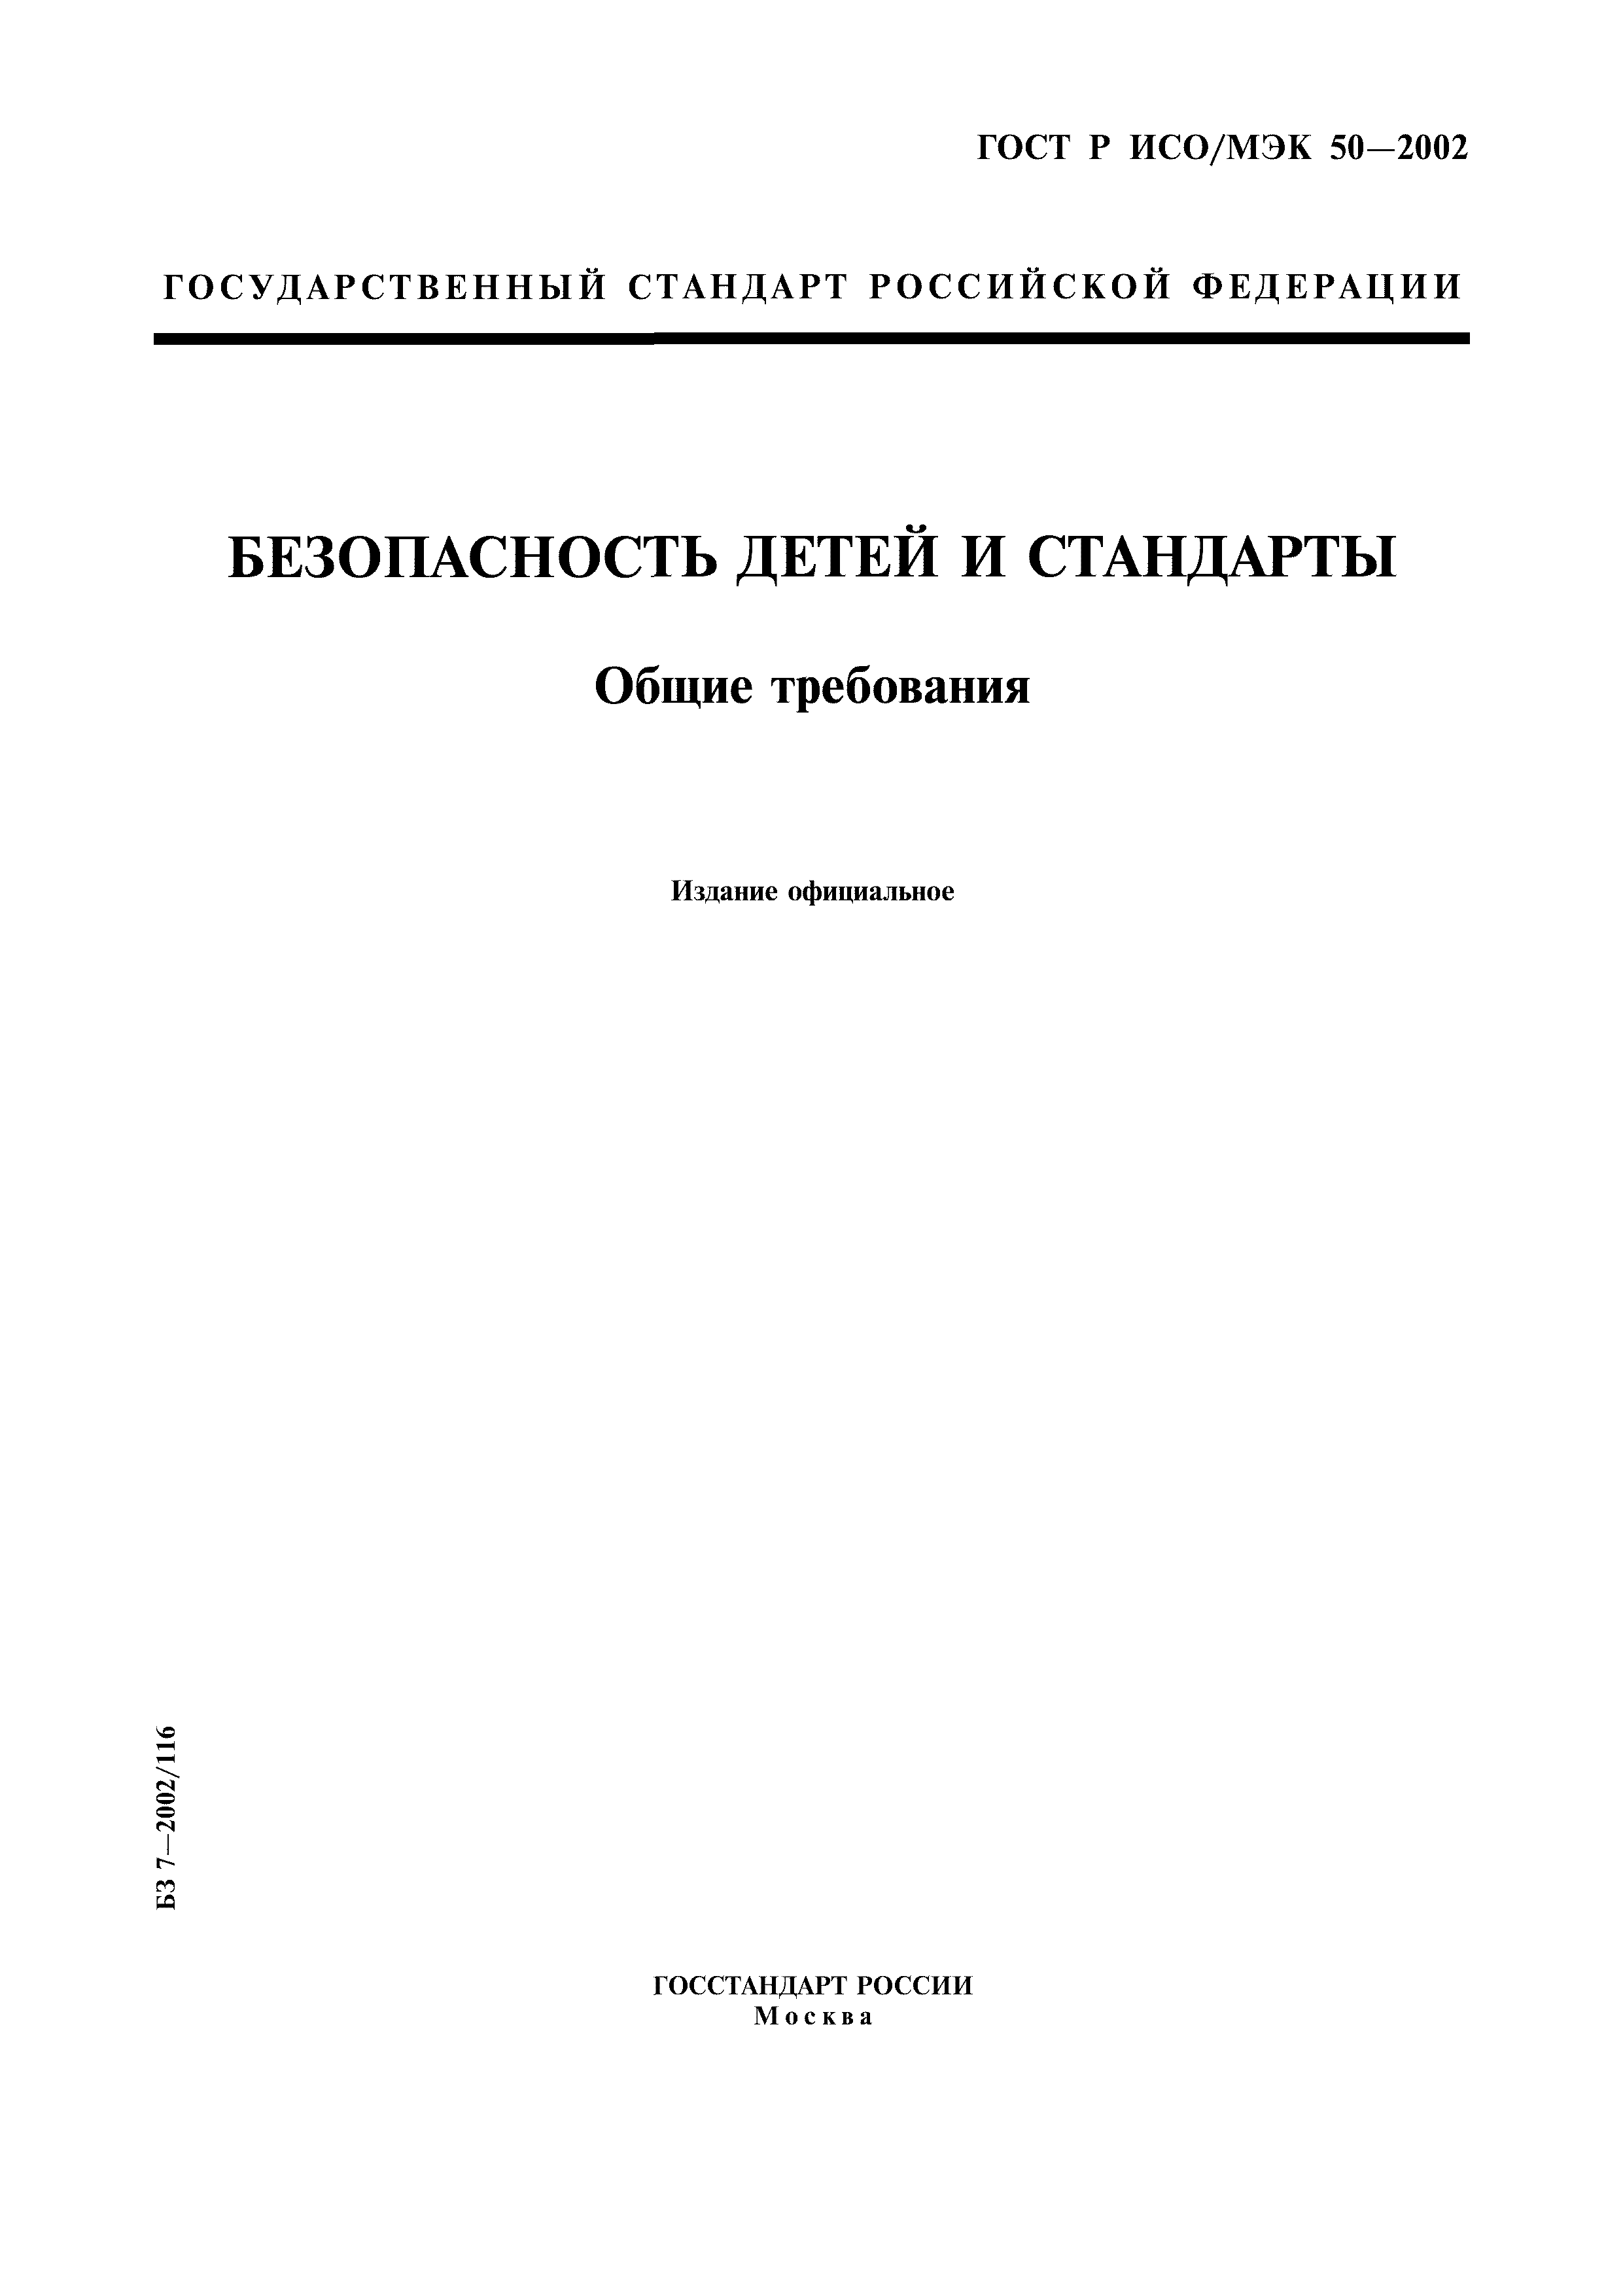 ГОСТ Р ИСО/МЭК 50-2002